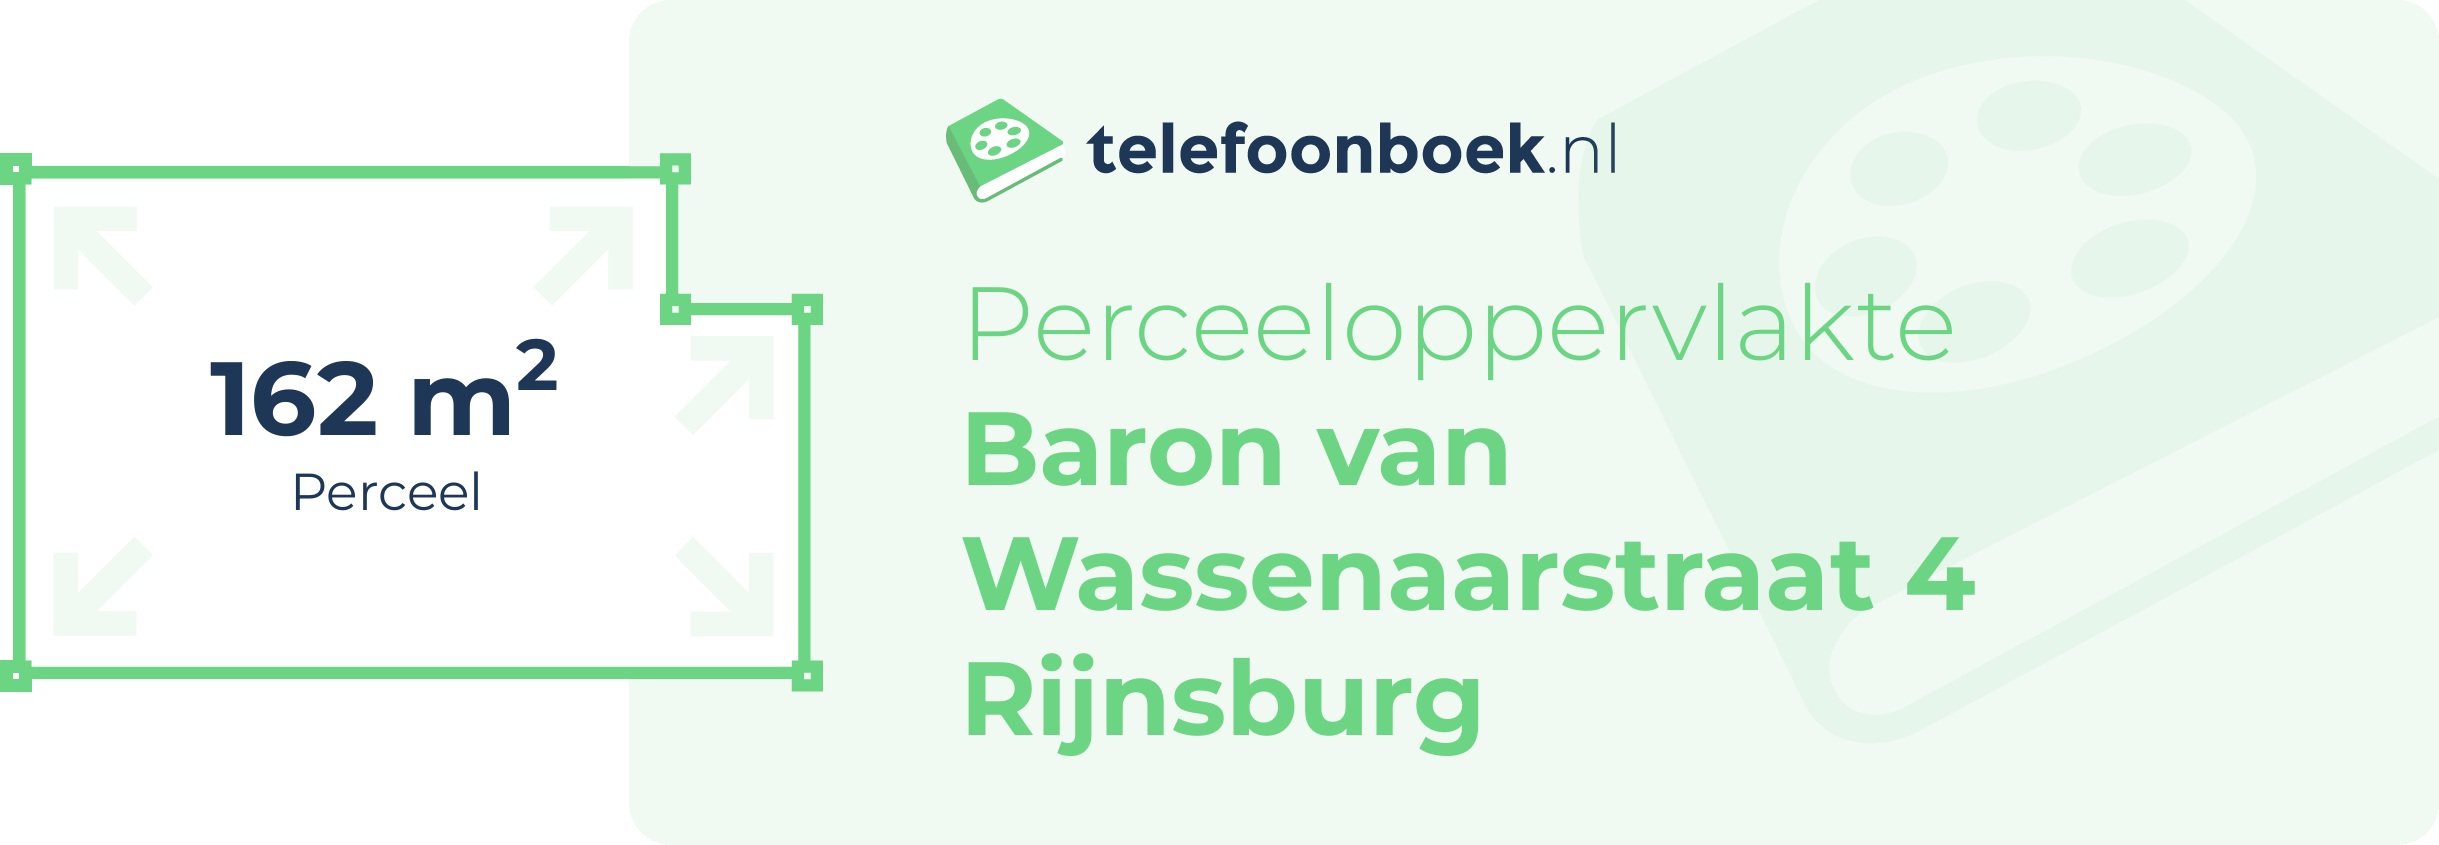 Perceeloppervlakte Baron Van Wassenaarstraat 4 Rijnsburg